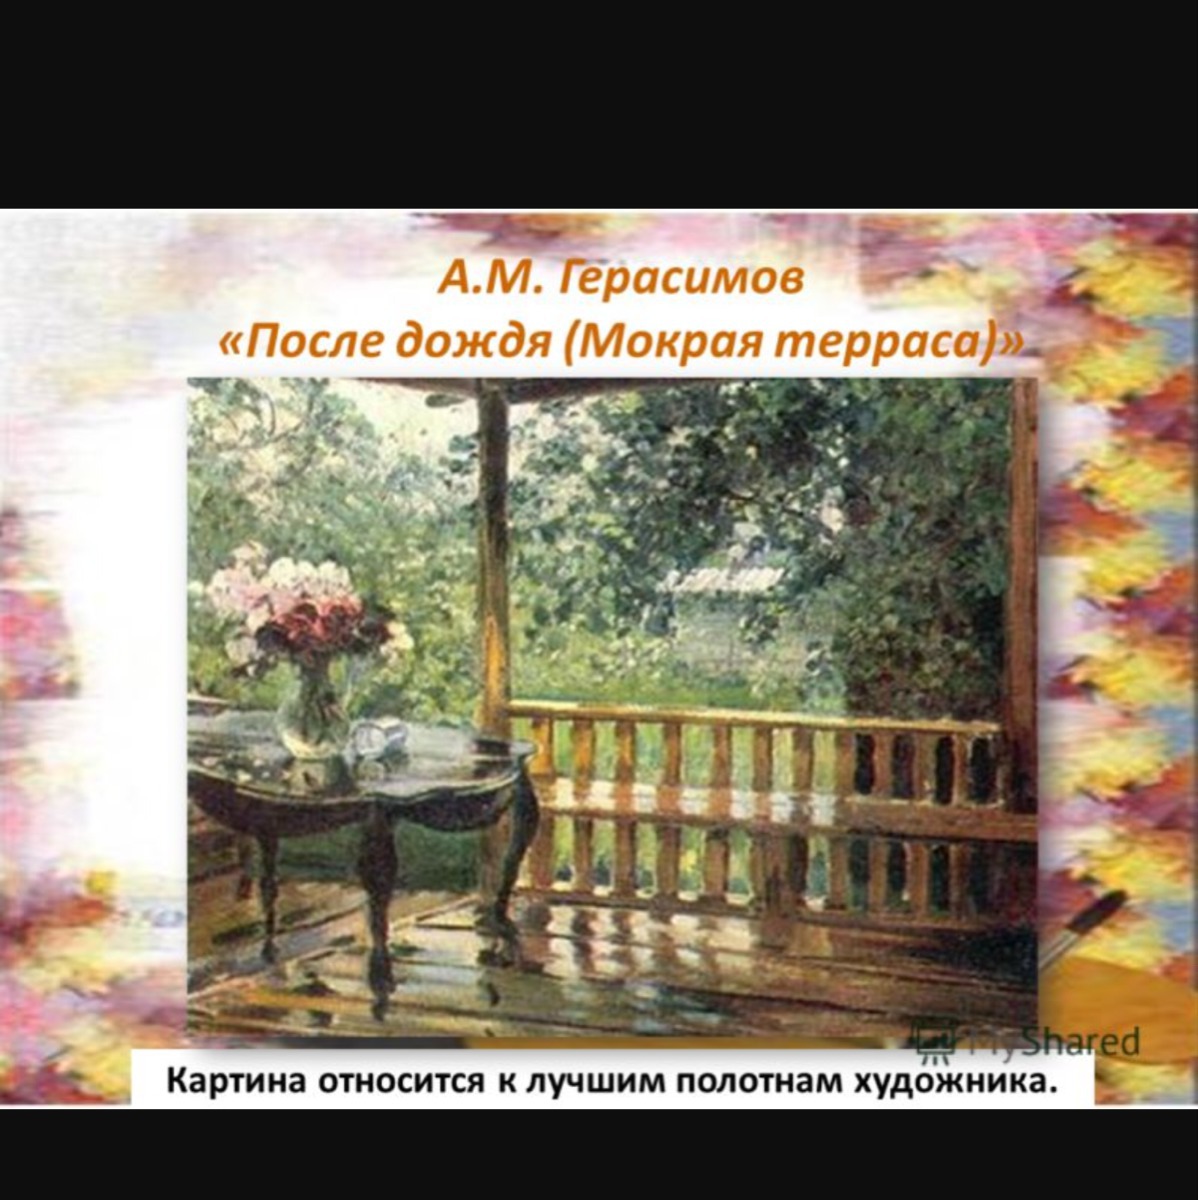 Сочинения герасимова мокрая терраса. А М Герасимов мокрая терраса. Картина Герасимова после дождя. А М Герасимов после дождя. А М Герасимов после дождя картина.